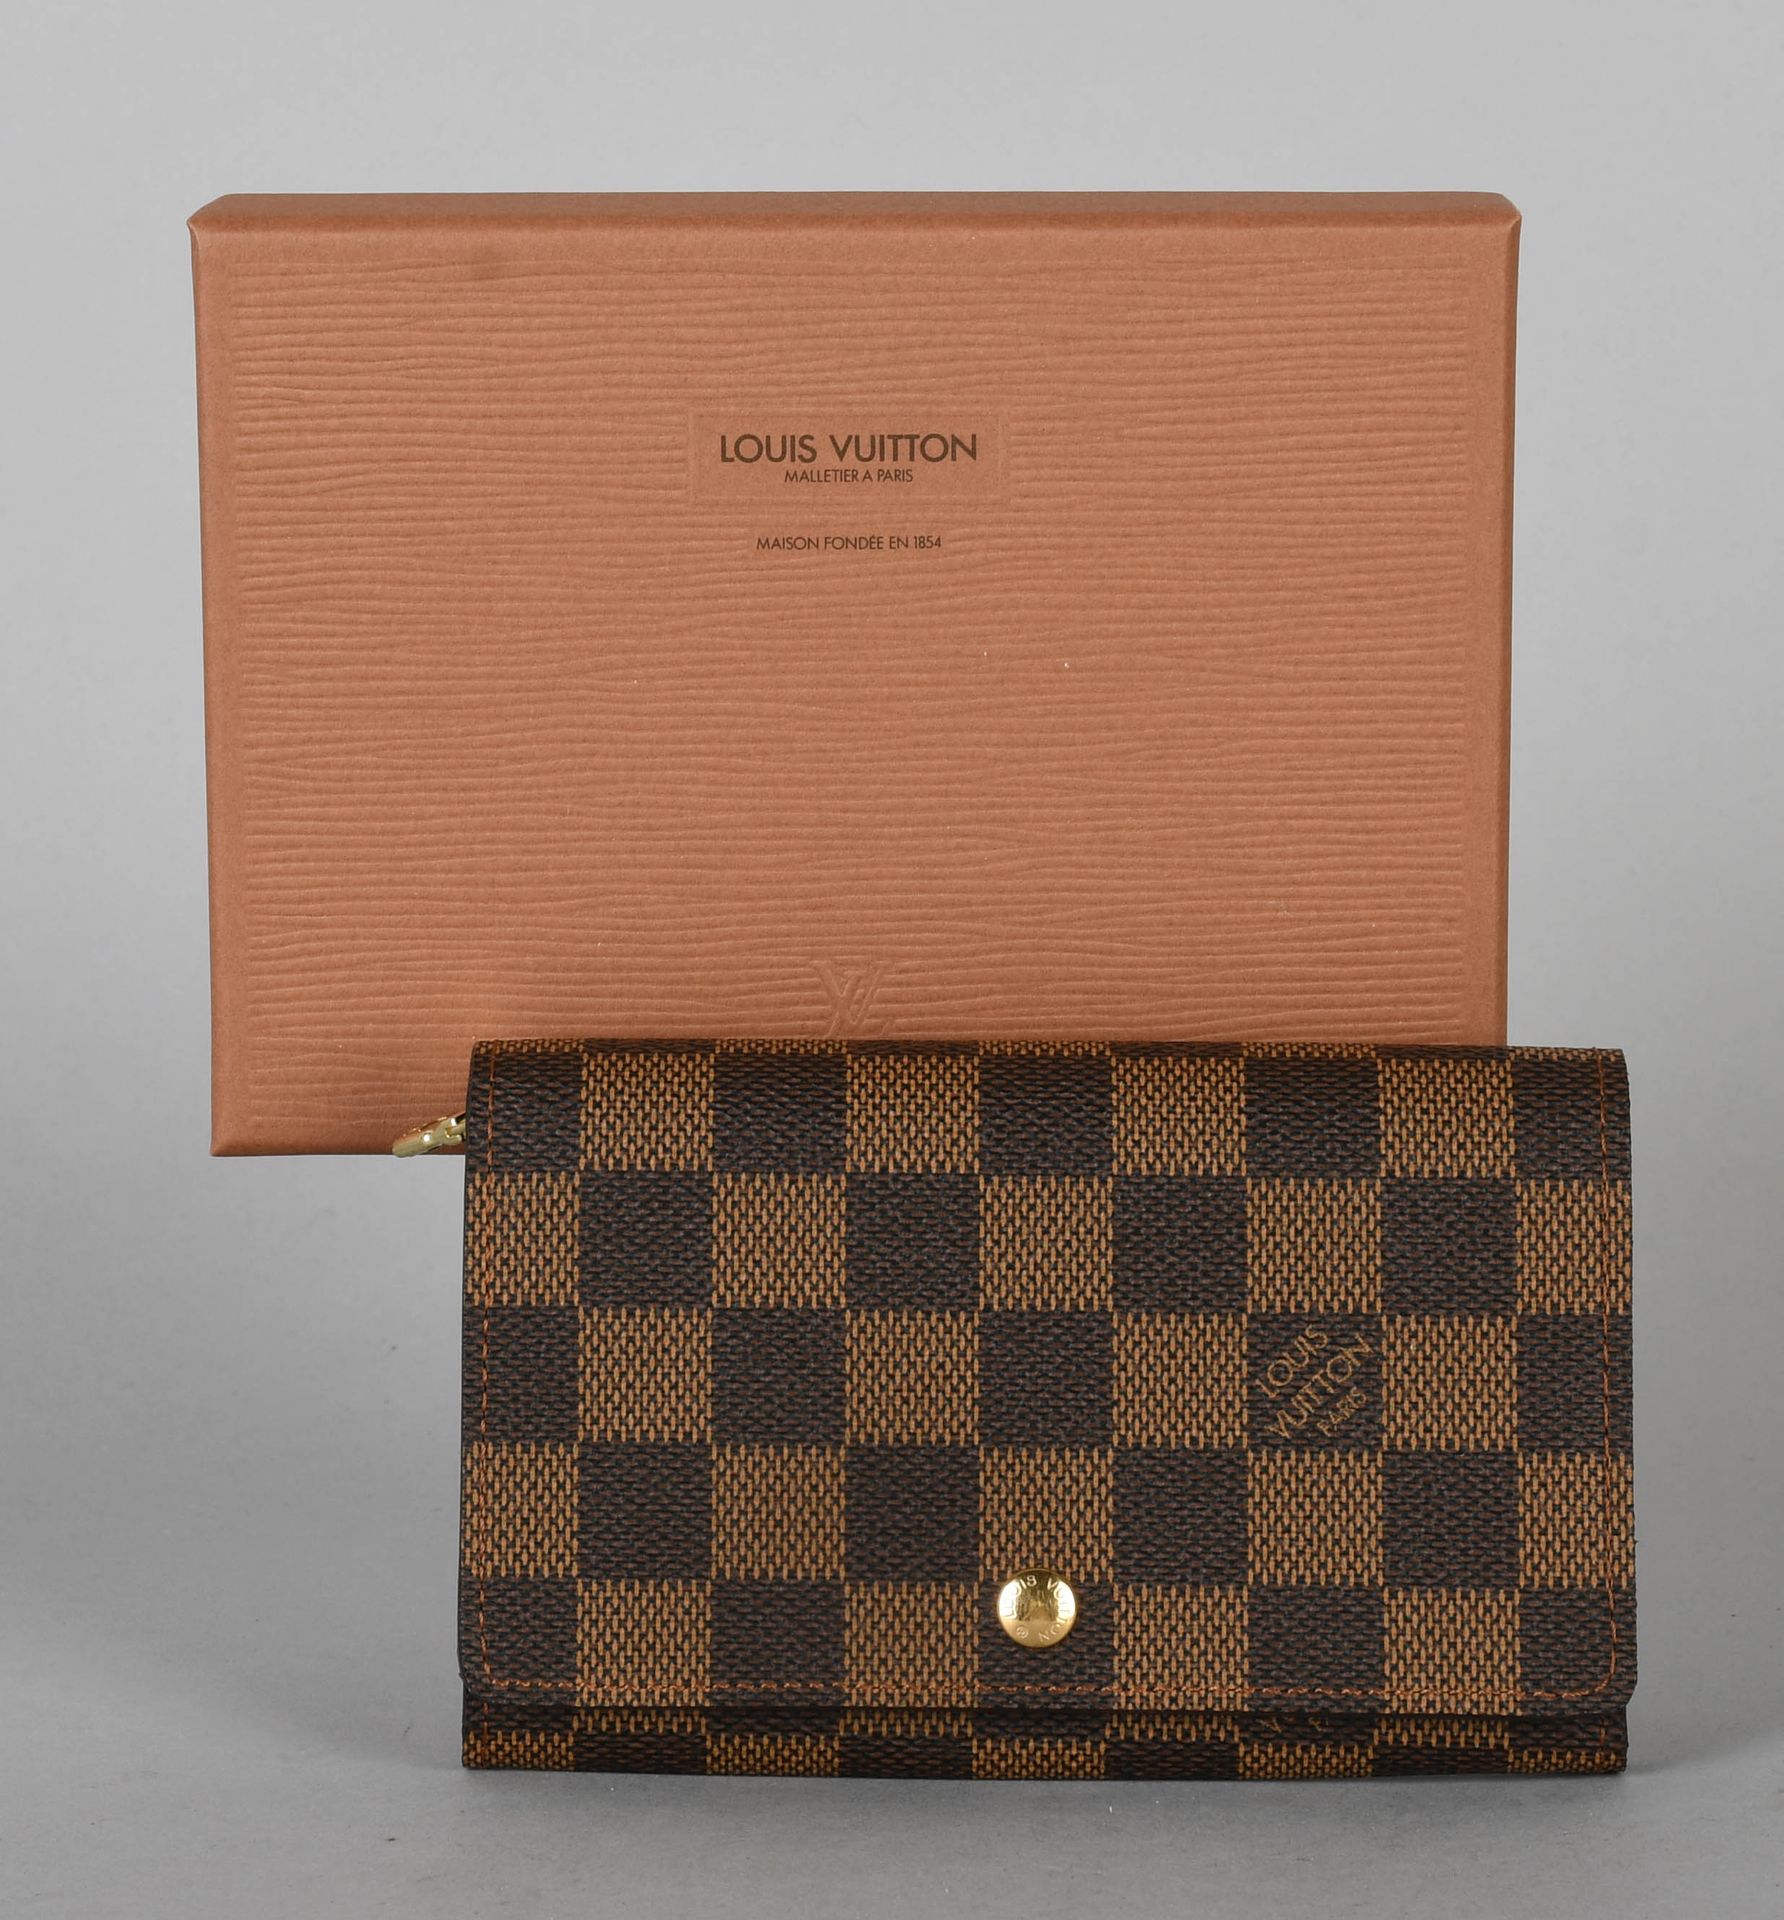 Null 路易威登

黑檀色棋盘式涂层帆布钱包。新的条件。在盒子里。